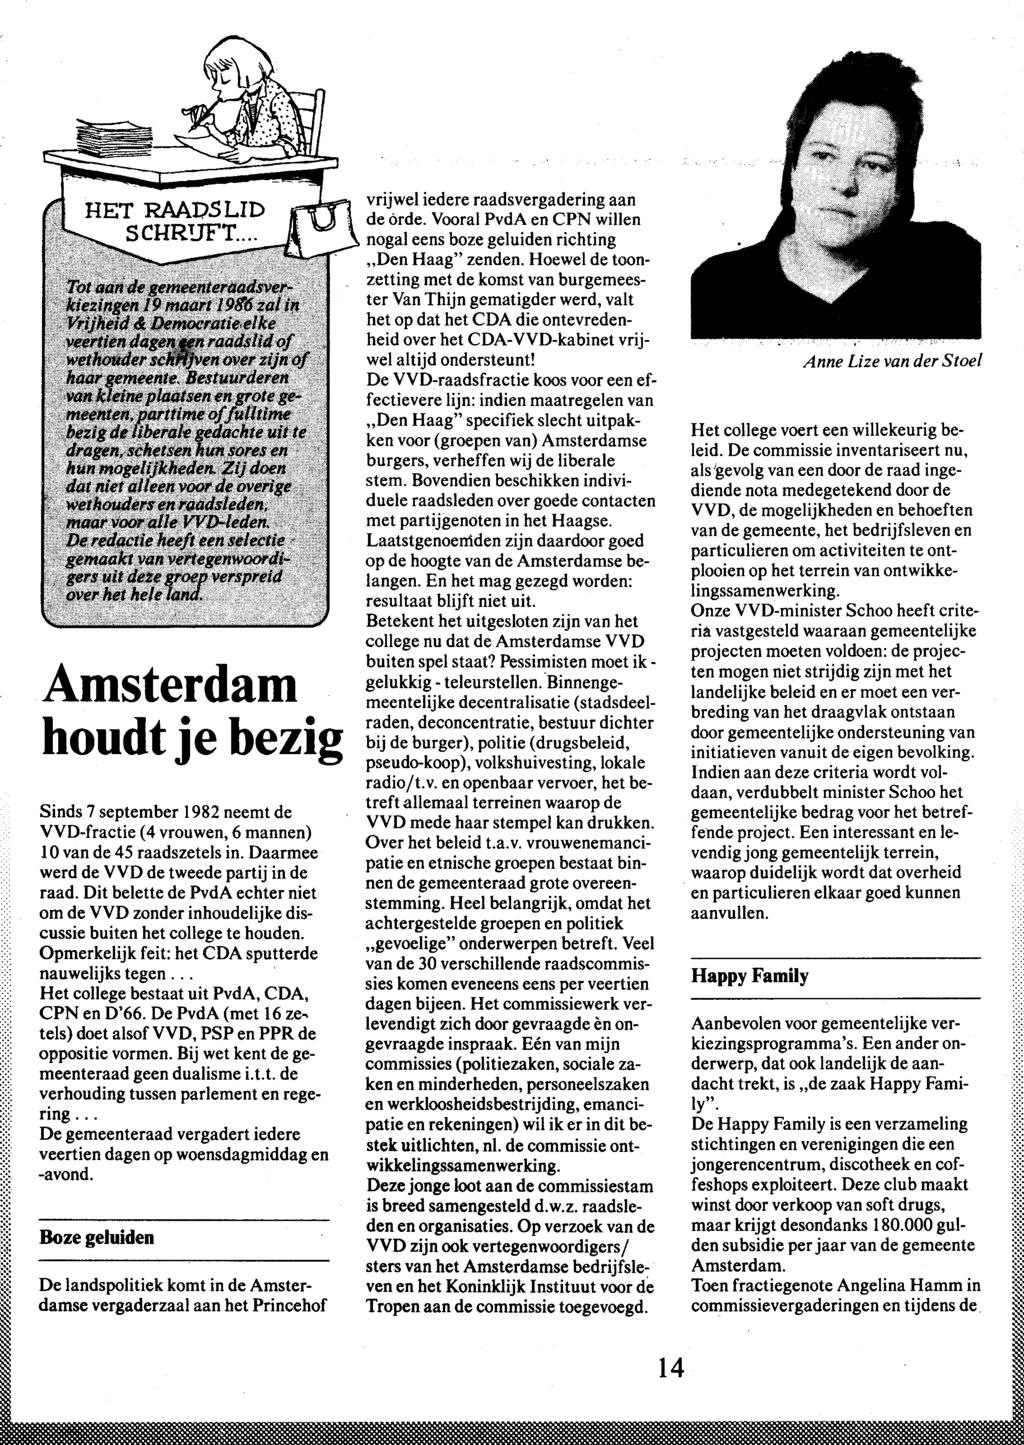 Amsterdam houdt je bezig Sinds 7 september 1982 neemt de VVD-fractie ( 4 vrouwen, 6 mannen) 10 van de 45 raadszetels in. Daarmee werd de VVD de tweede partij in de raad.